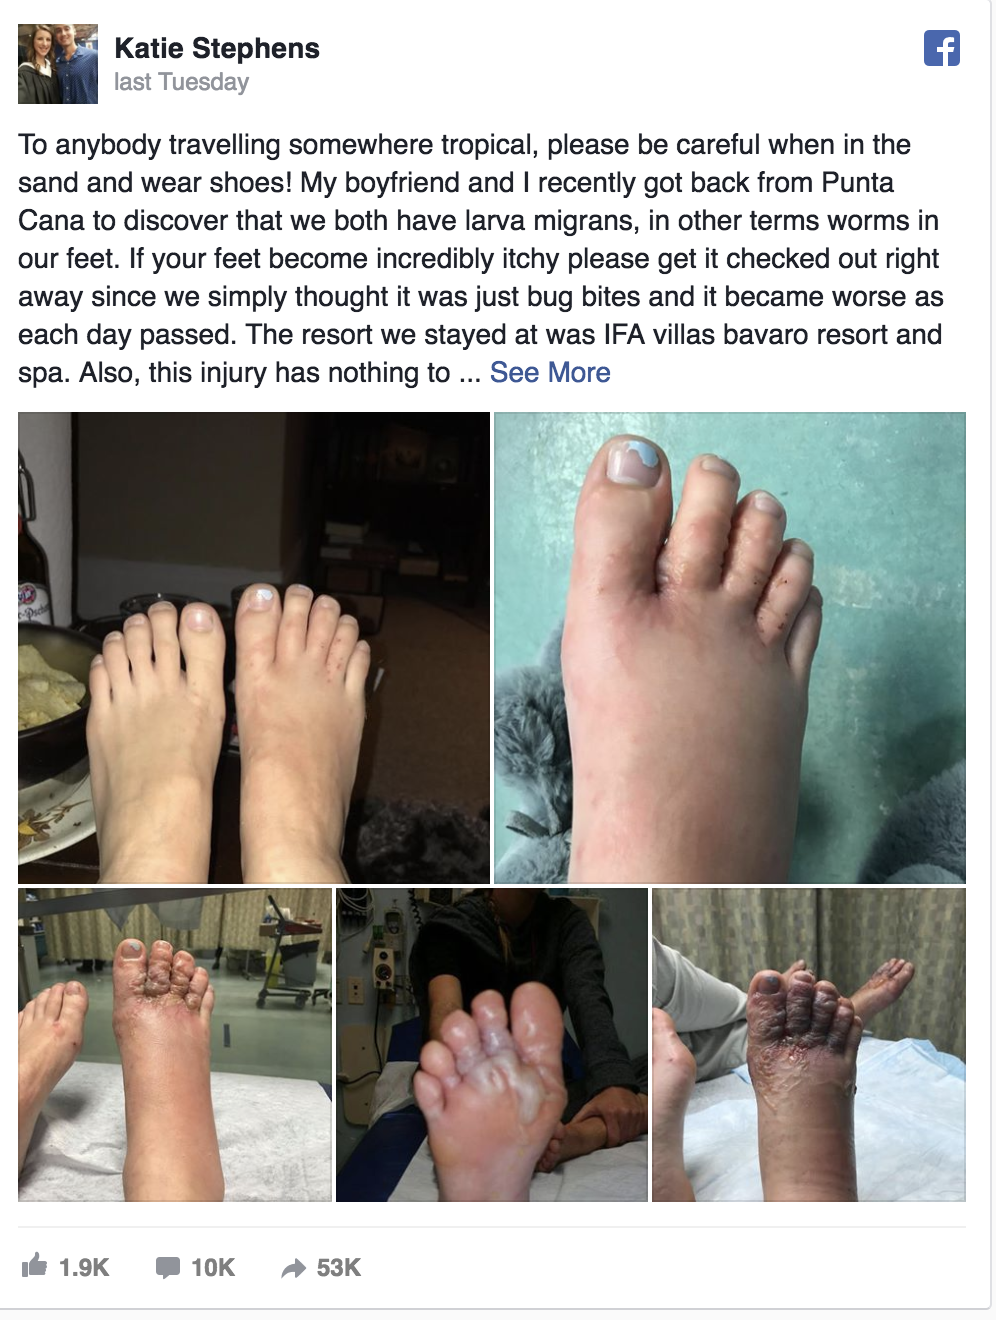 sand flea bites on feet